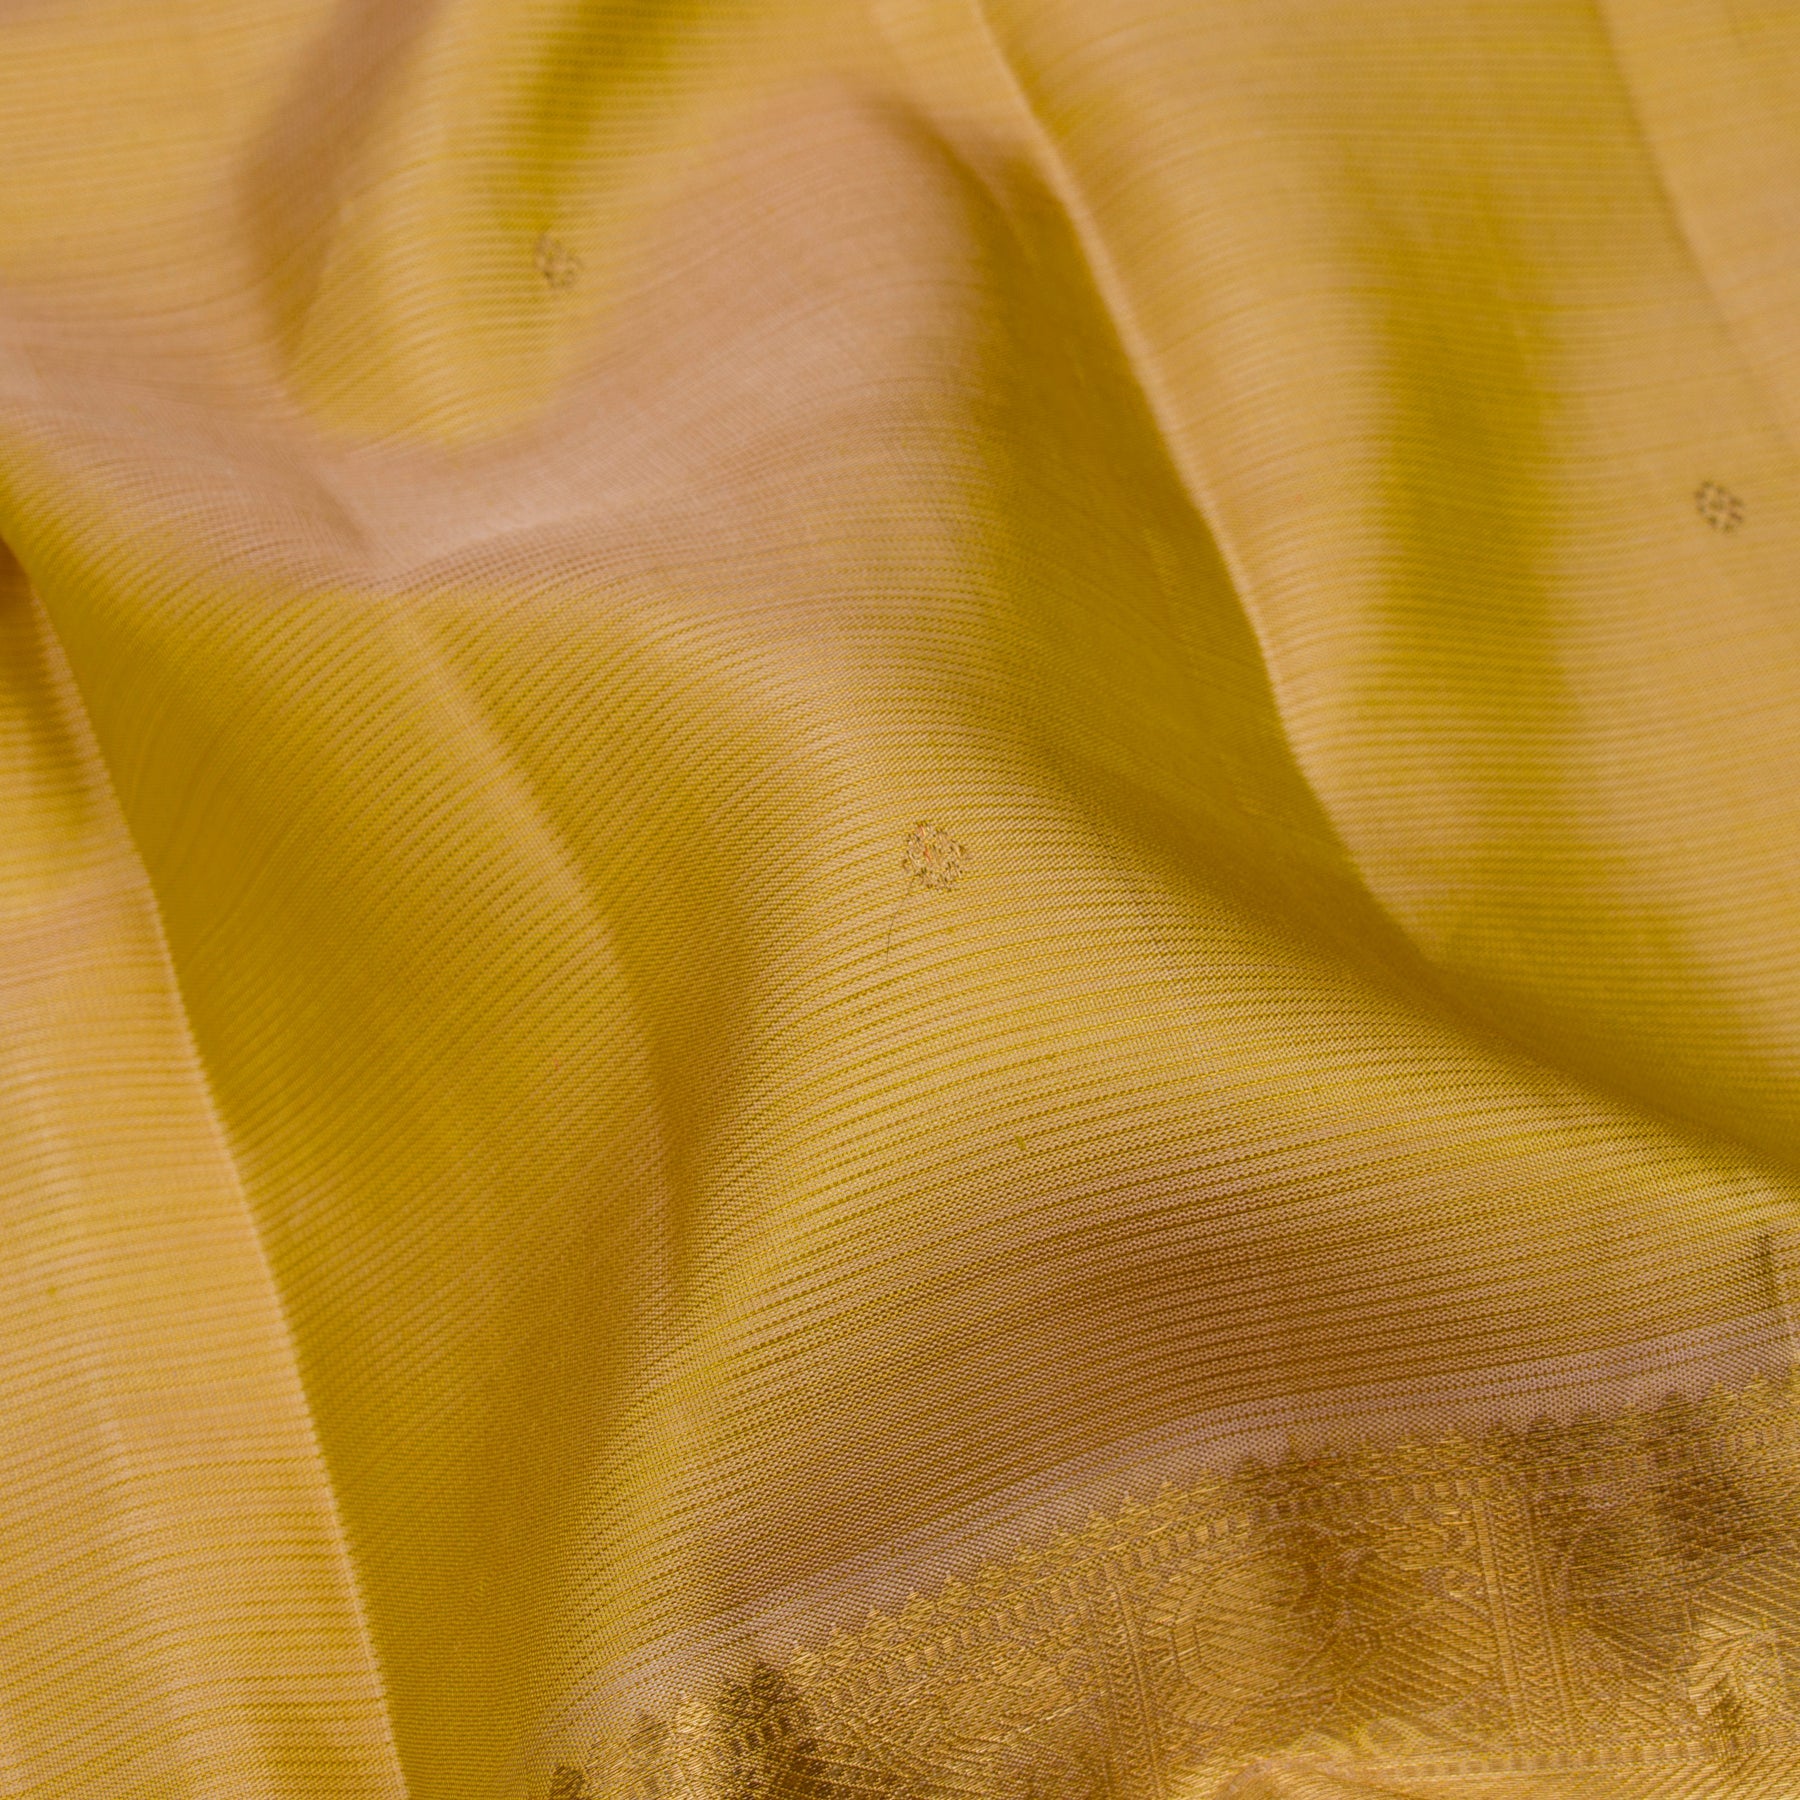 Kanakavalli Kanjivaram Silk Sari 23-599-HS001-09779 - Fabric View